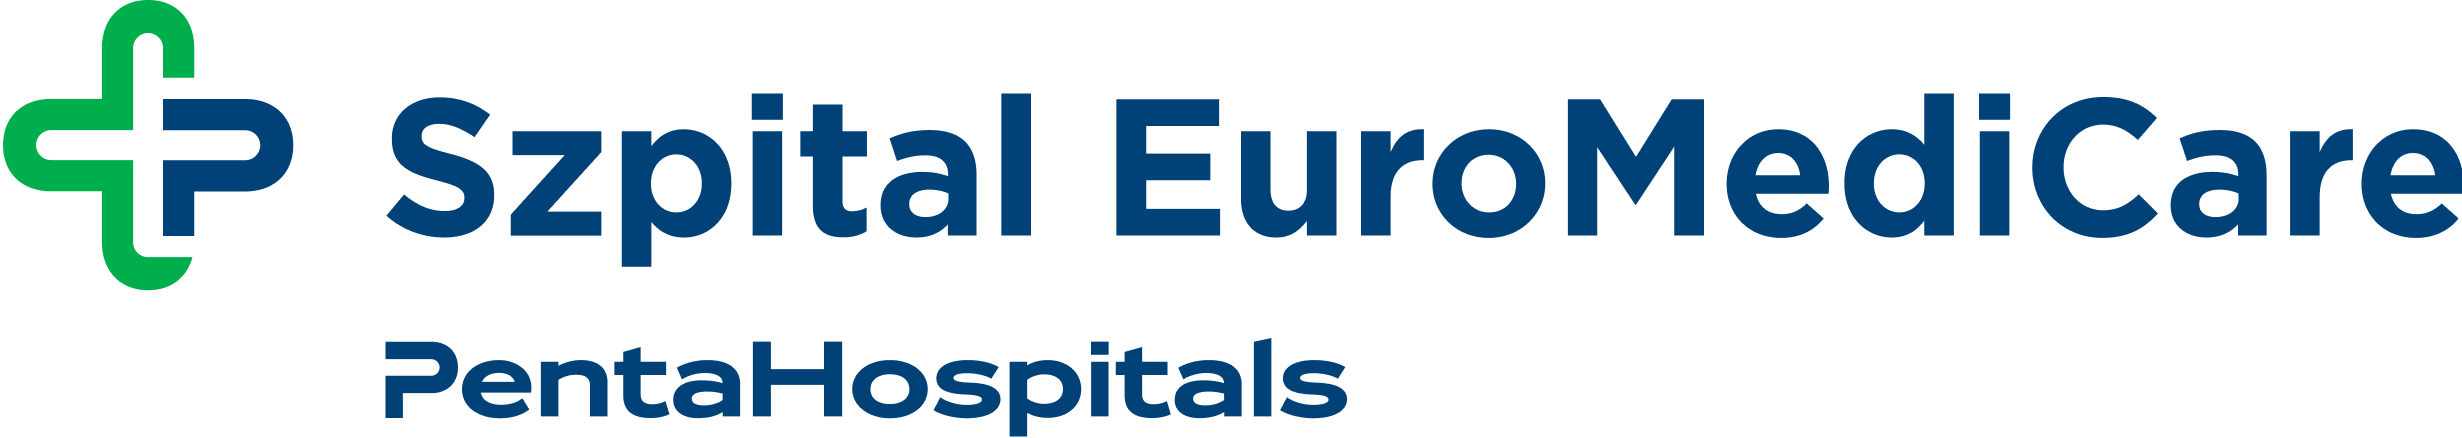 Szpital EuroMediCare PentaHospitals Logo